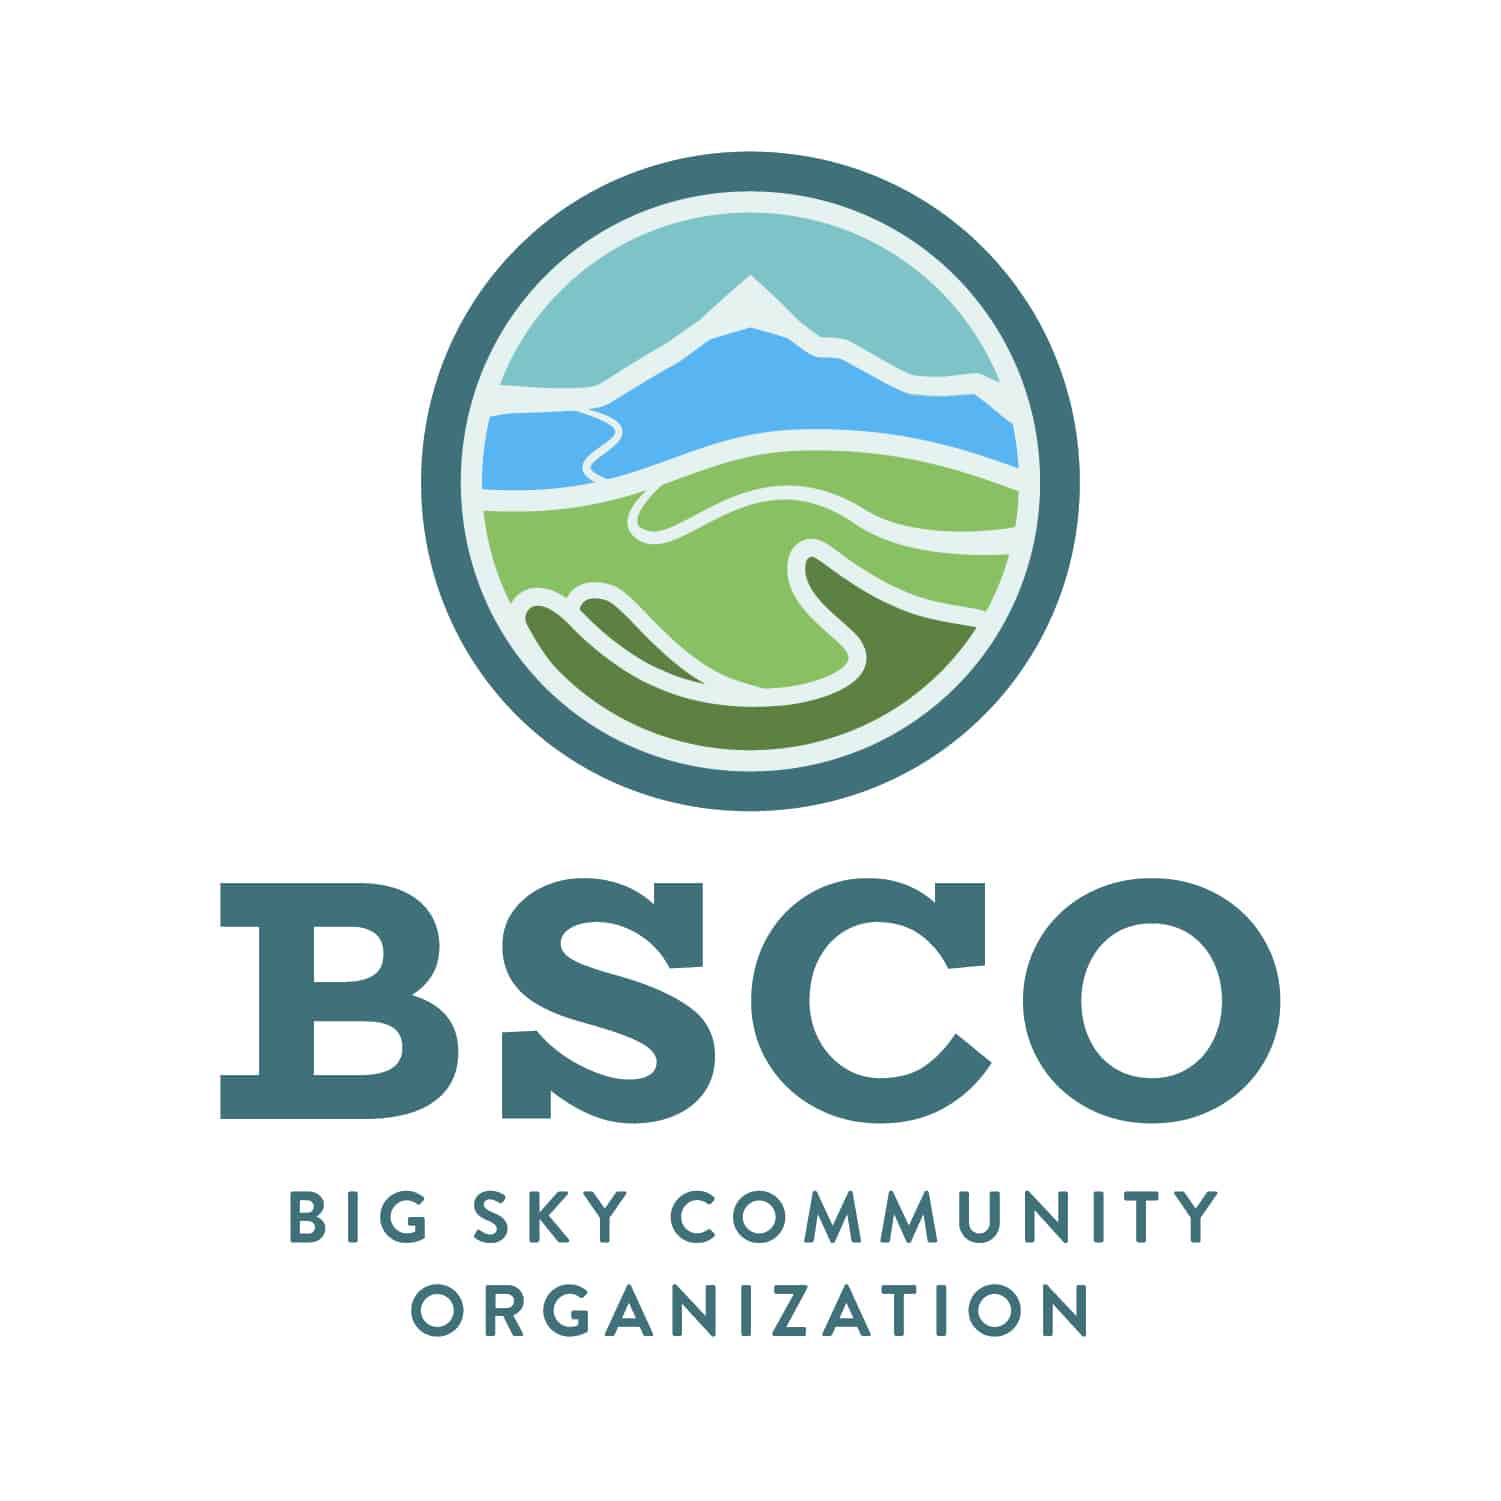 Big Sky Community Organization